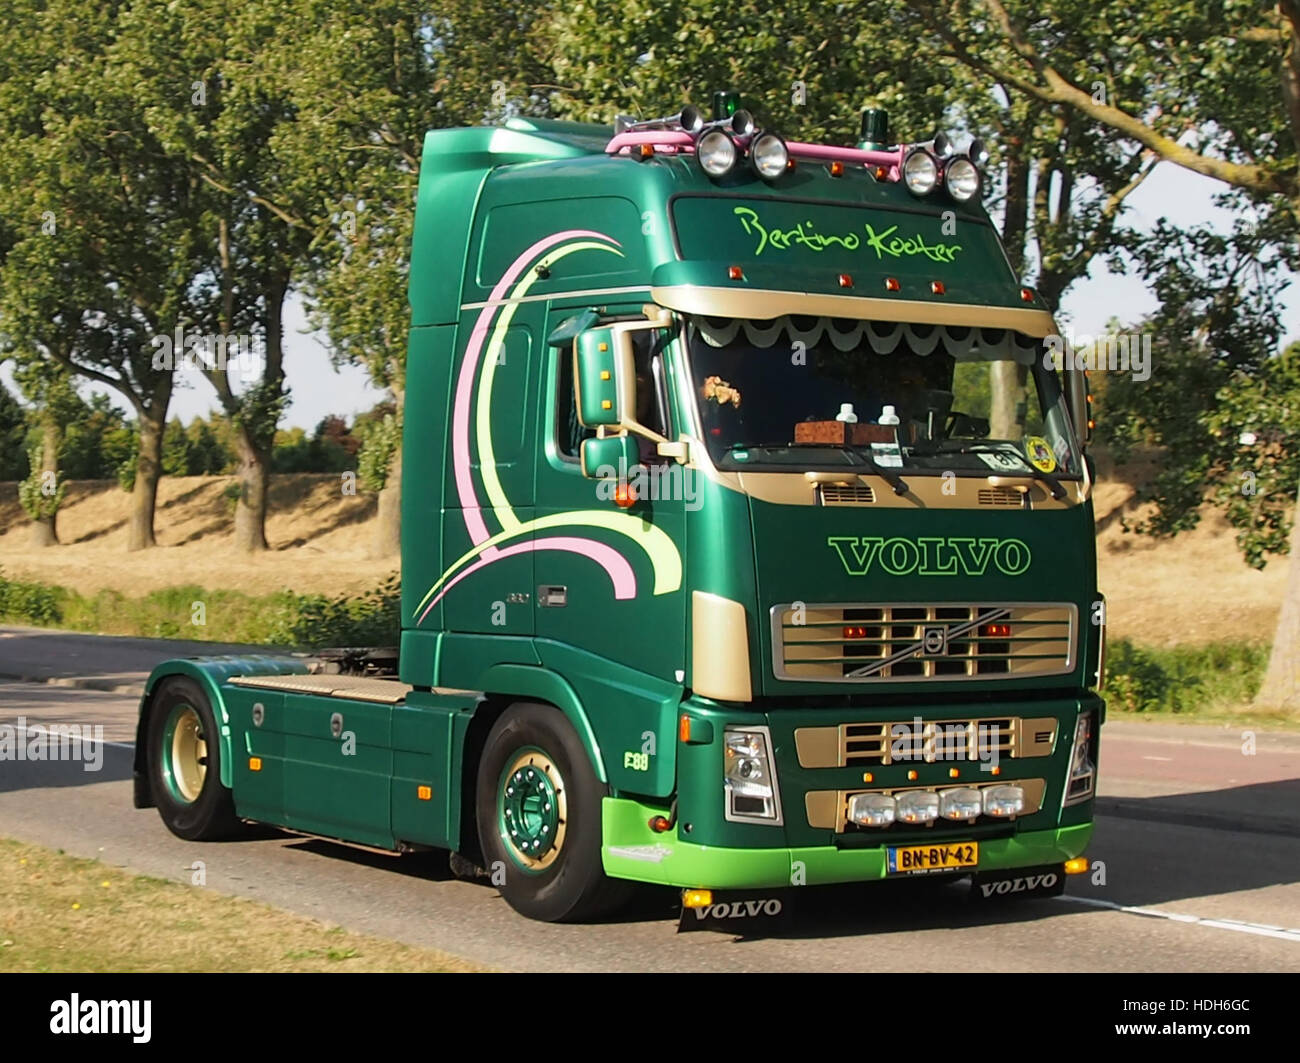 Volvo truck, Bertino Kooter, truckrun 2016 pic1 Stock Photo